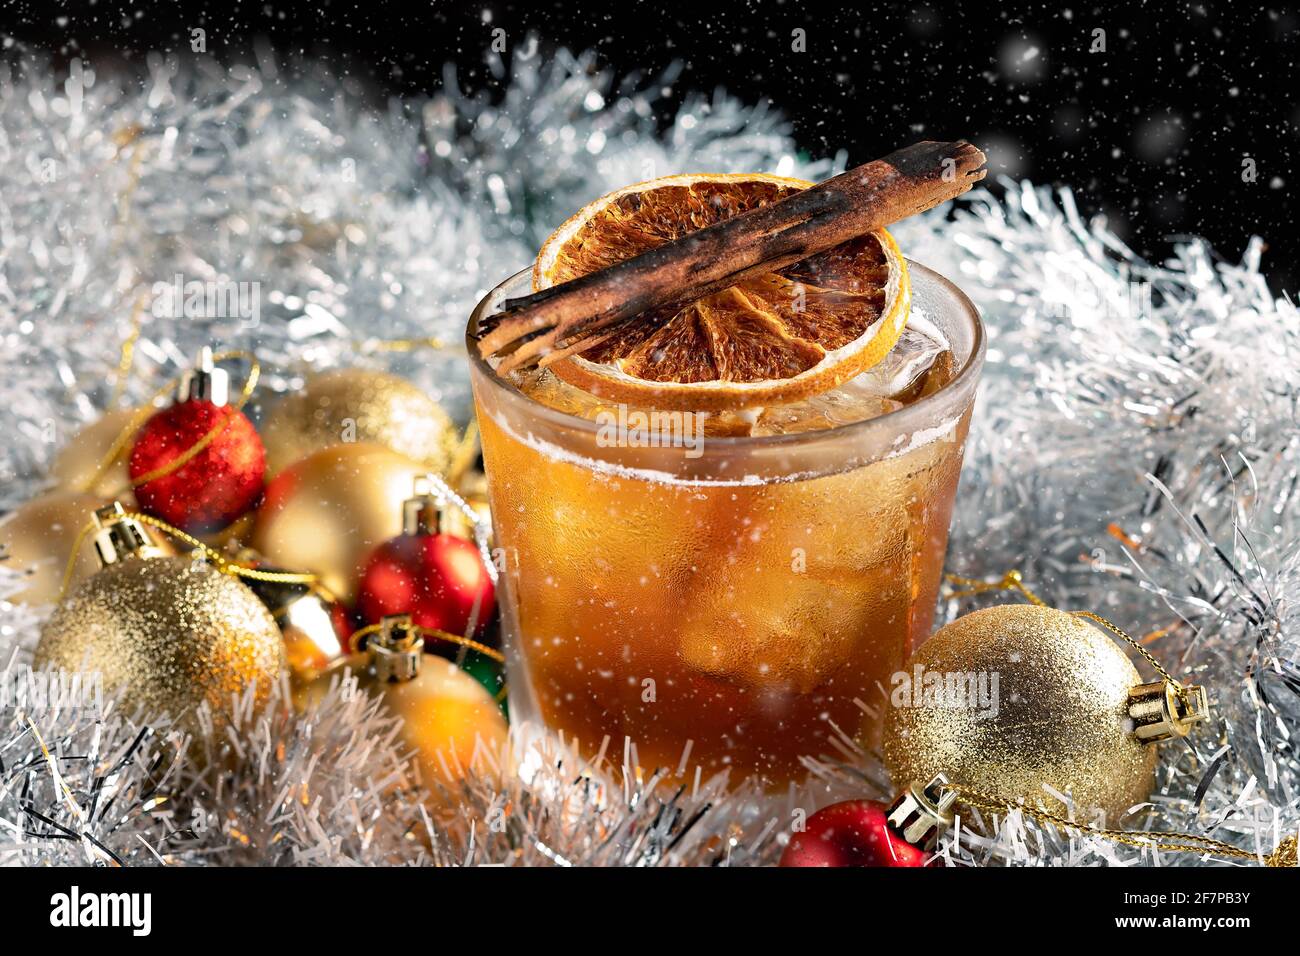 Ein besonderer Weihnachtscocktail, der in einem Steinglas mit weihnachtlichen Dekorationen auf Eis serviert wird. Stockfoto